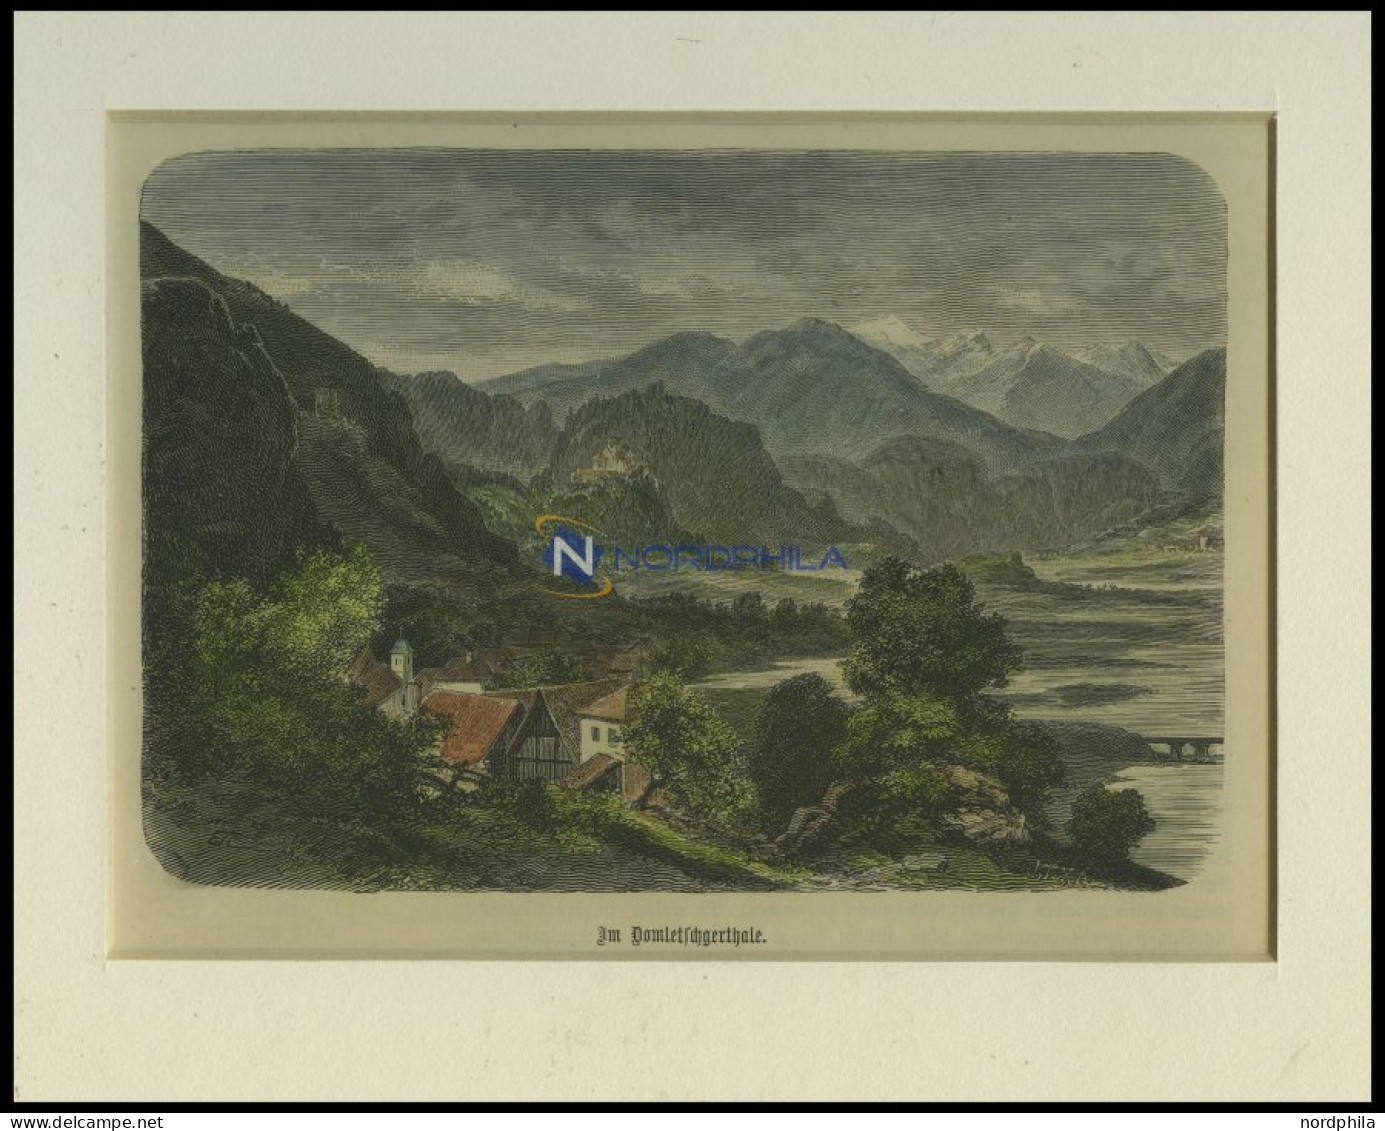 Im DOMLETSCHERTHALE, Kolorierter Holzstich Um 1880 - Lithographien